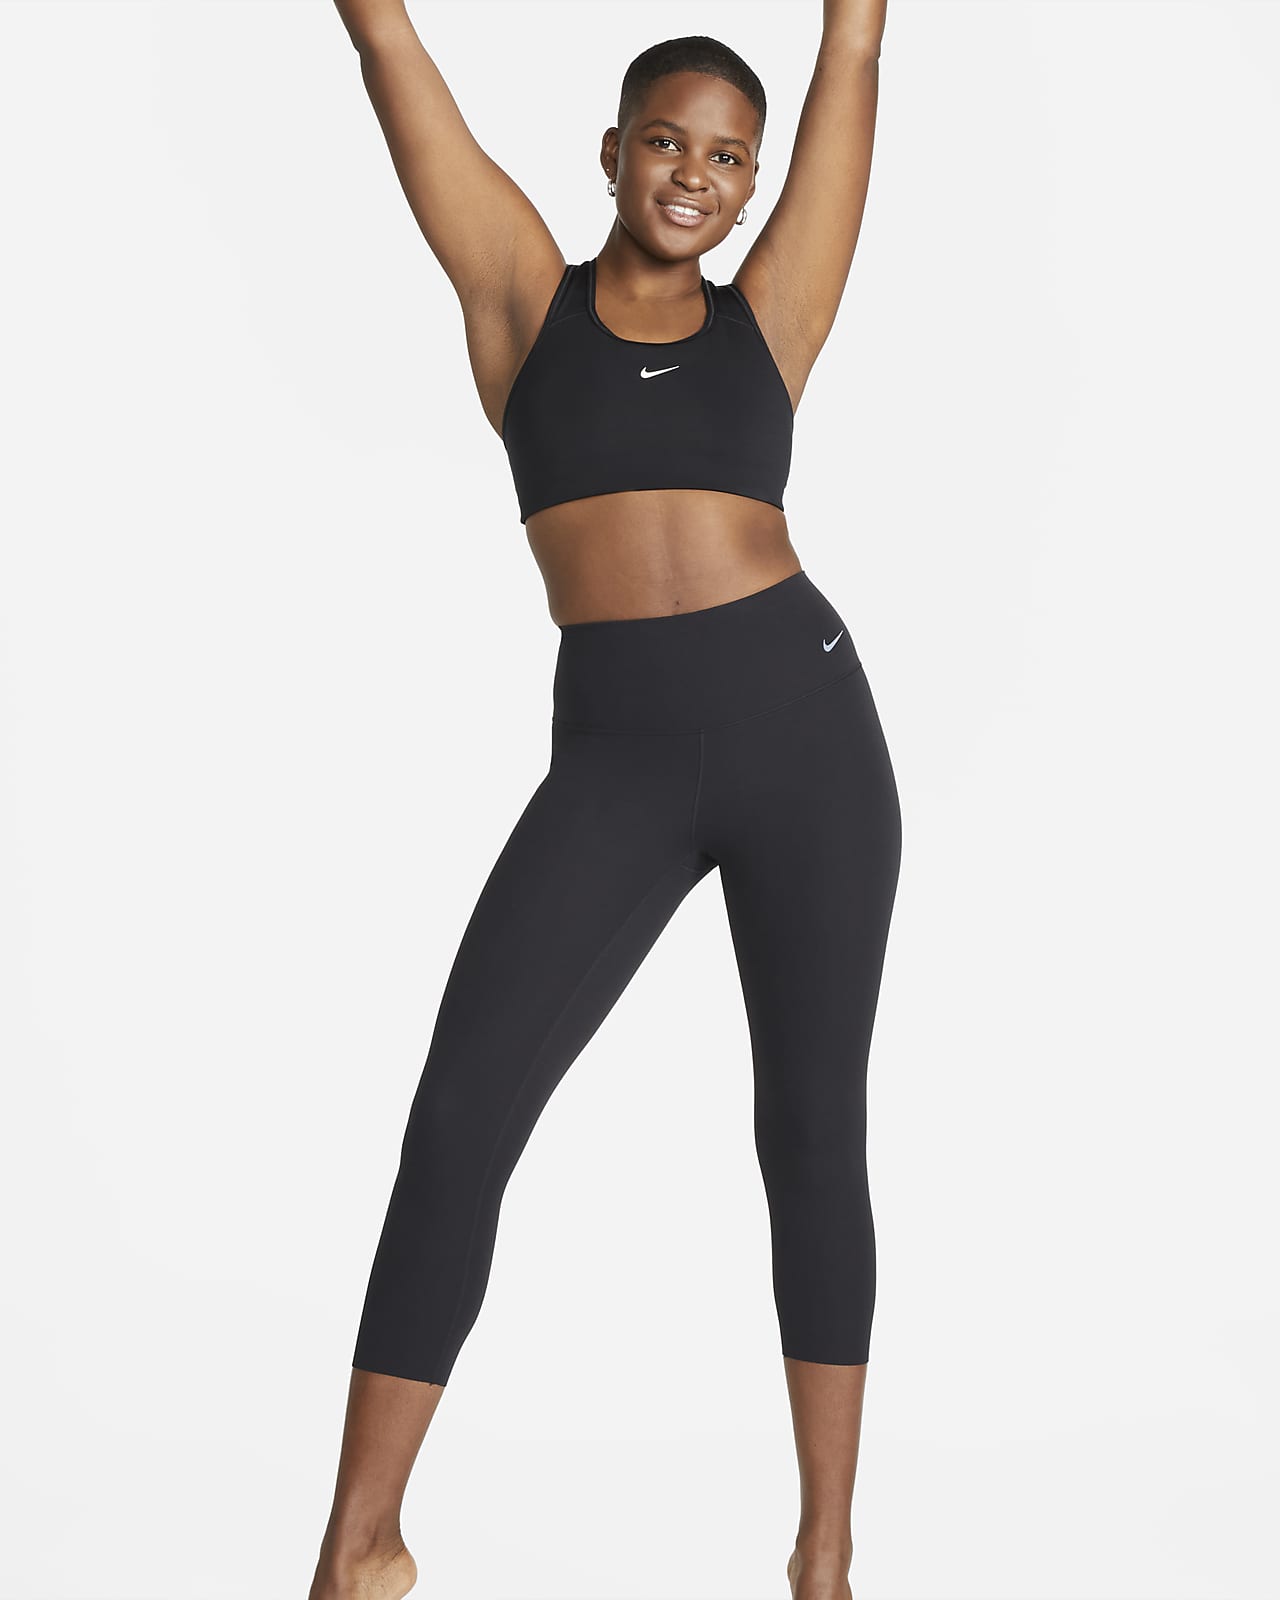 bag offer have Korte Nike Zenvy-leggings med høj talje og blid støtte til kvinder. Nike DK